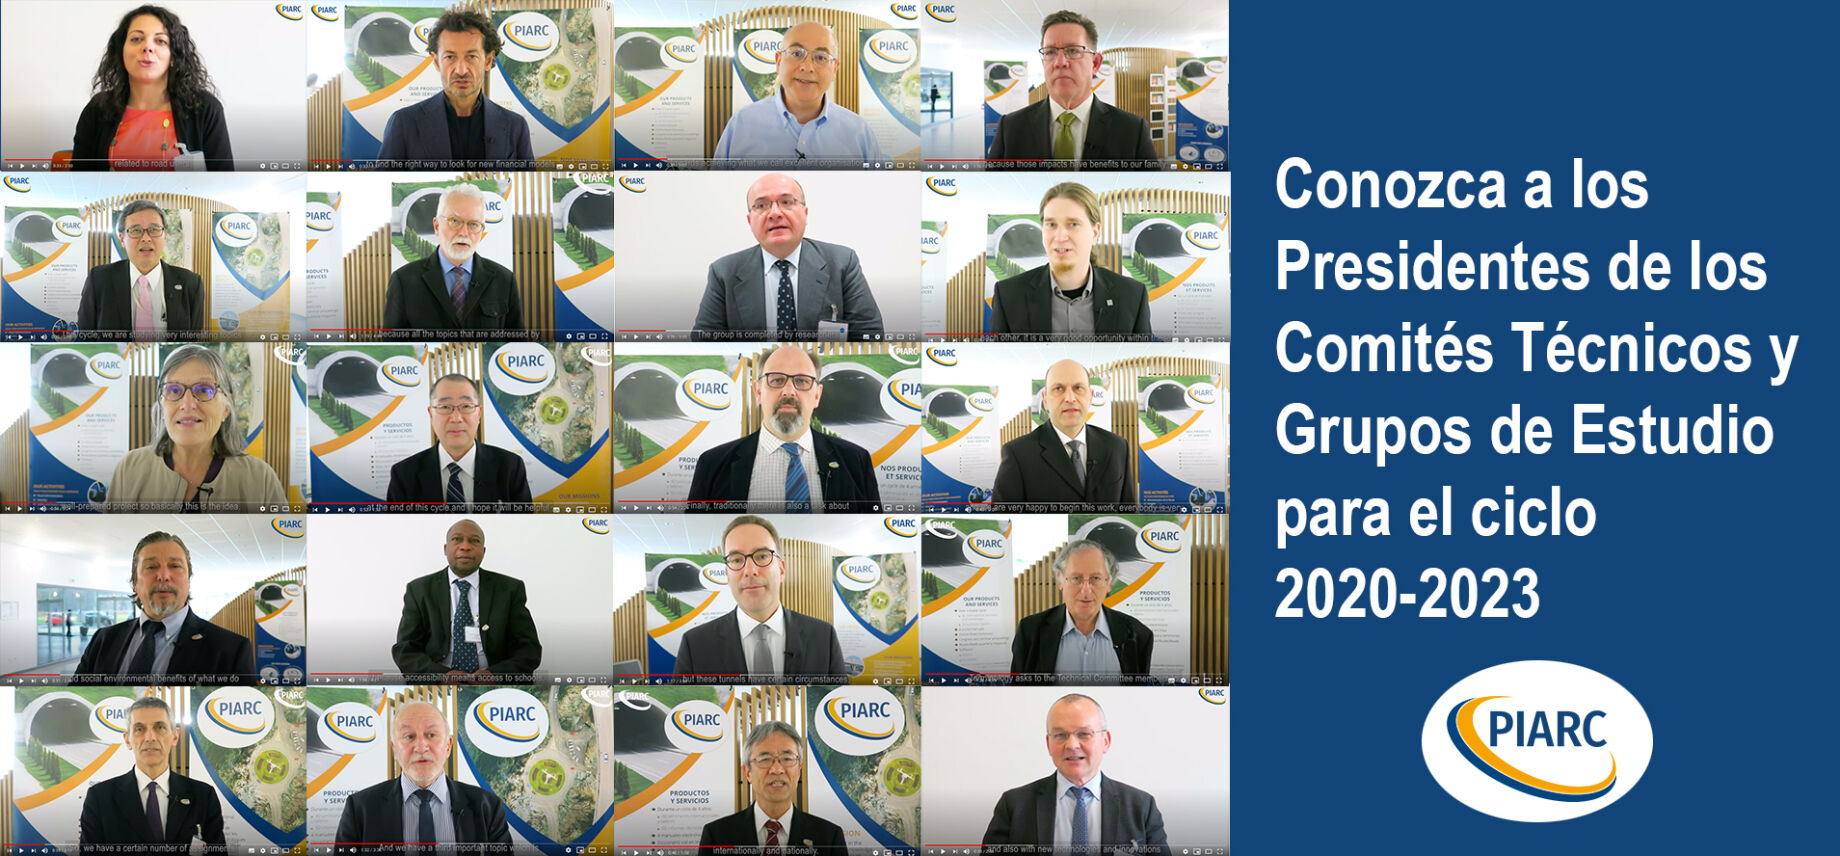 Conozca a los Presidentes de los 22 Comités Técnicos y Grupos de Estudio para el ciclo de trabajo 2020-2023